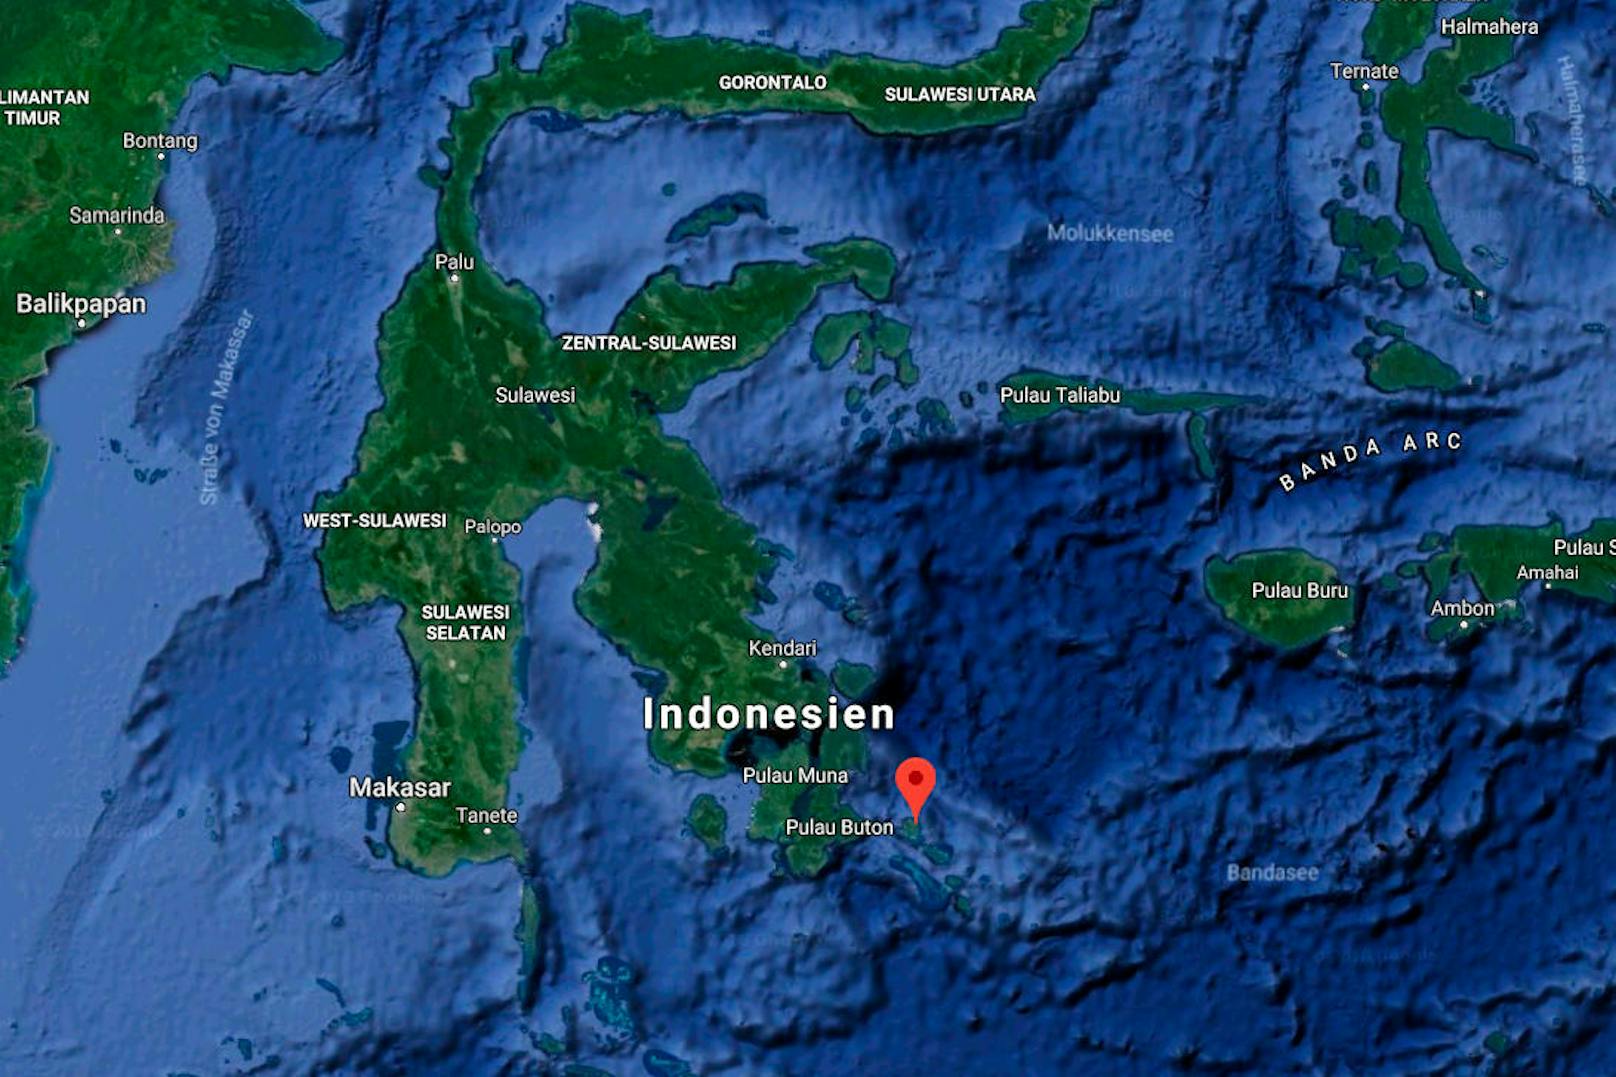 ... dem Nationalpark Wakatobi gefunden. Der Park liegt südöstlich von Sulawesi und ist unter Tauchern berühmt für sein weitverzweigtes Riff und die beeindruckende Unterwasserwelt mit Rochen und Walen.